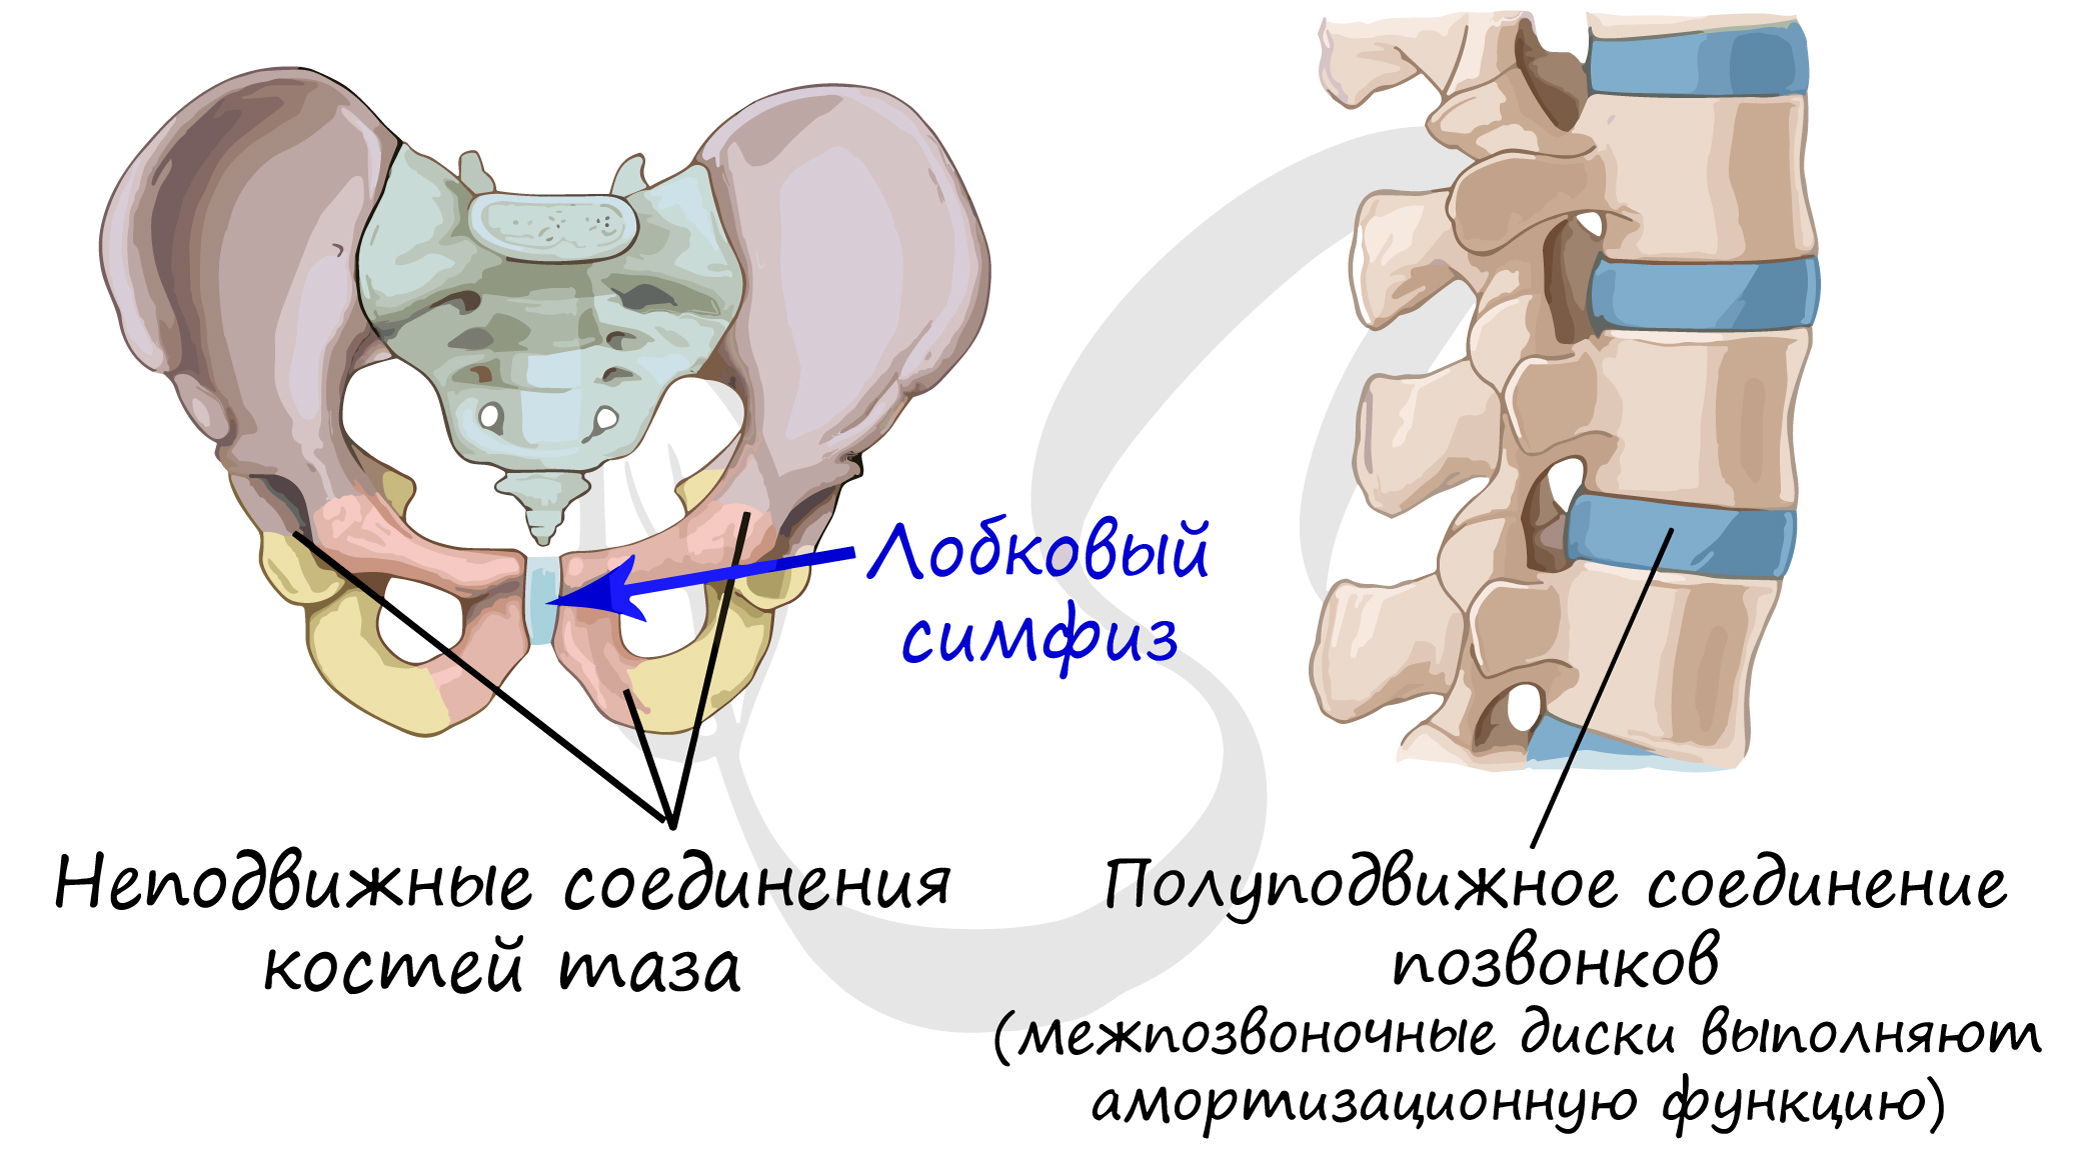 Соединение лобковых костей. Соединение костей таза полуподвижное. Лобковый симфиз полуподвижное соединение. Соединение тазовых костей неподвижное полуподвижное подвижное. Кости таза подвижные полуподвижные неподвижные.